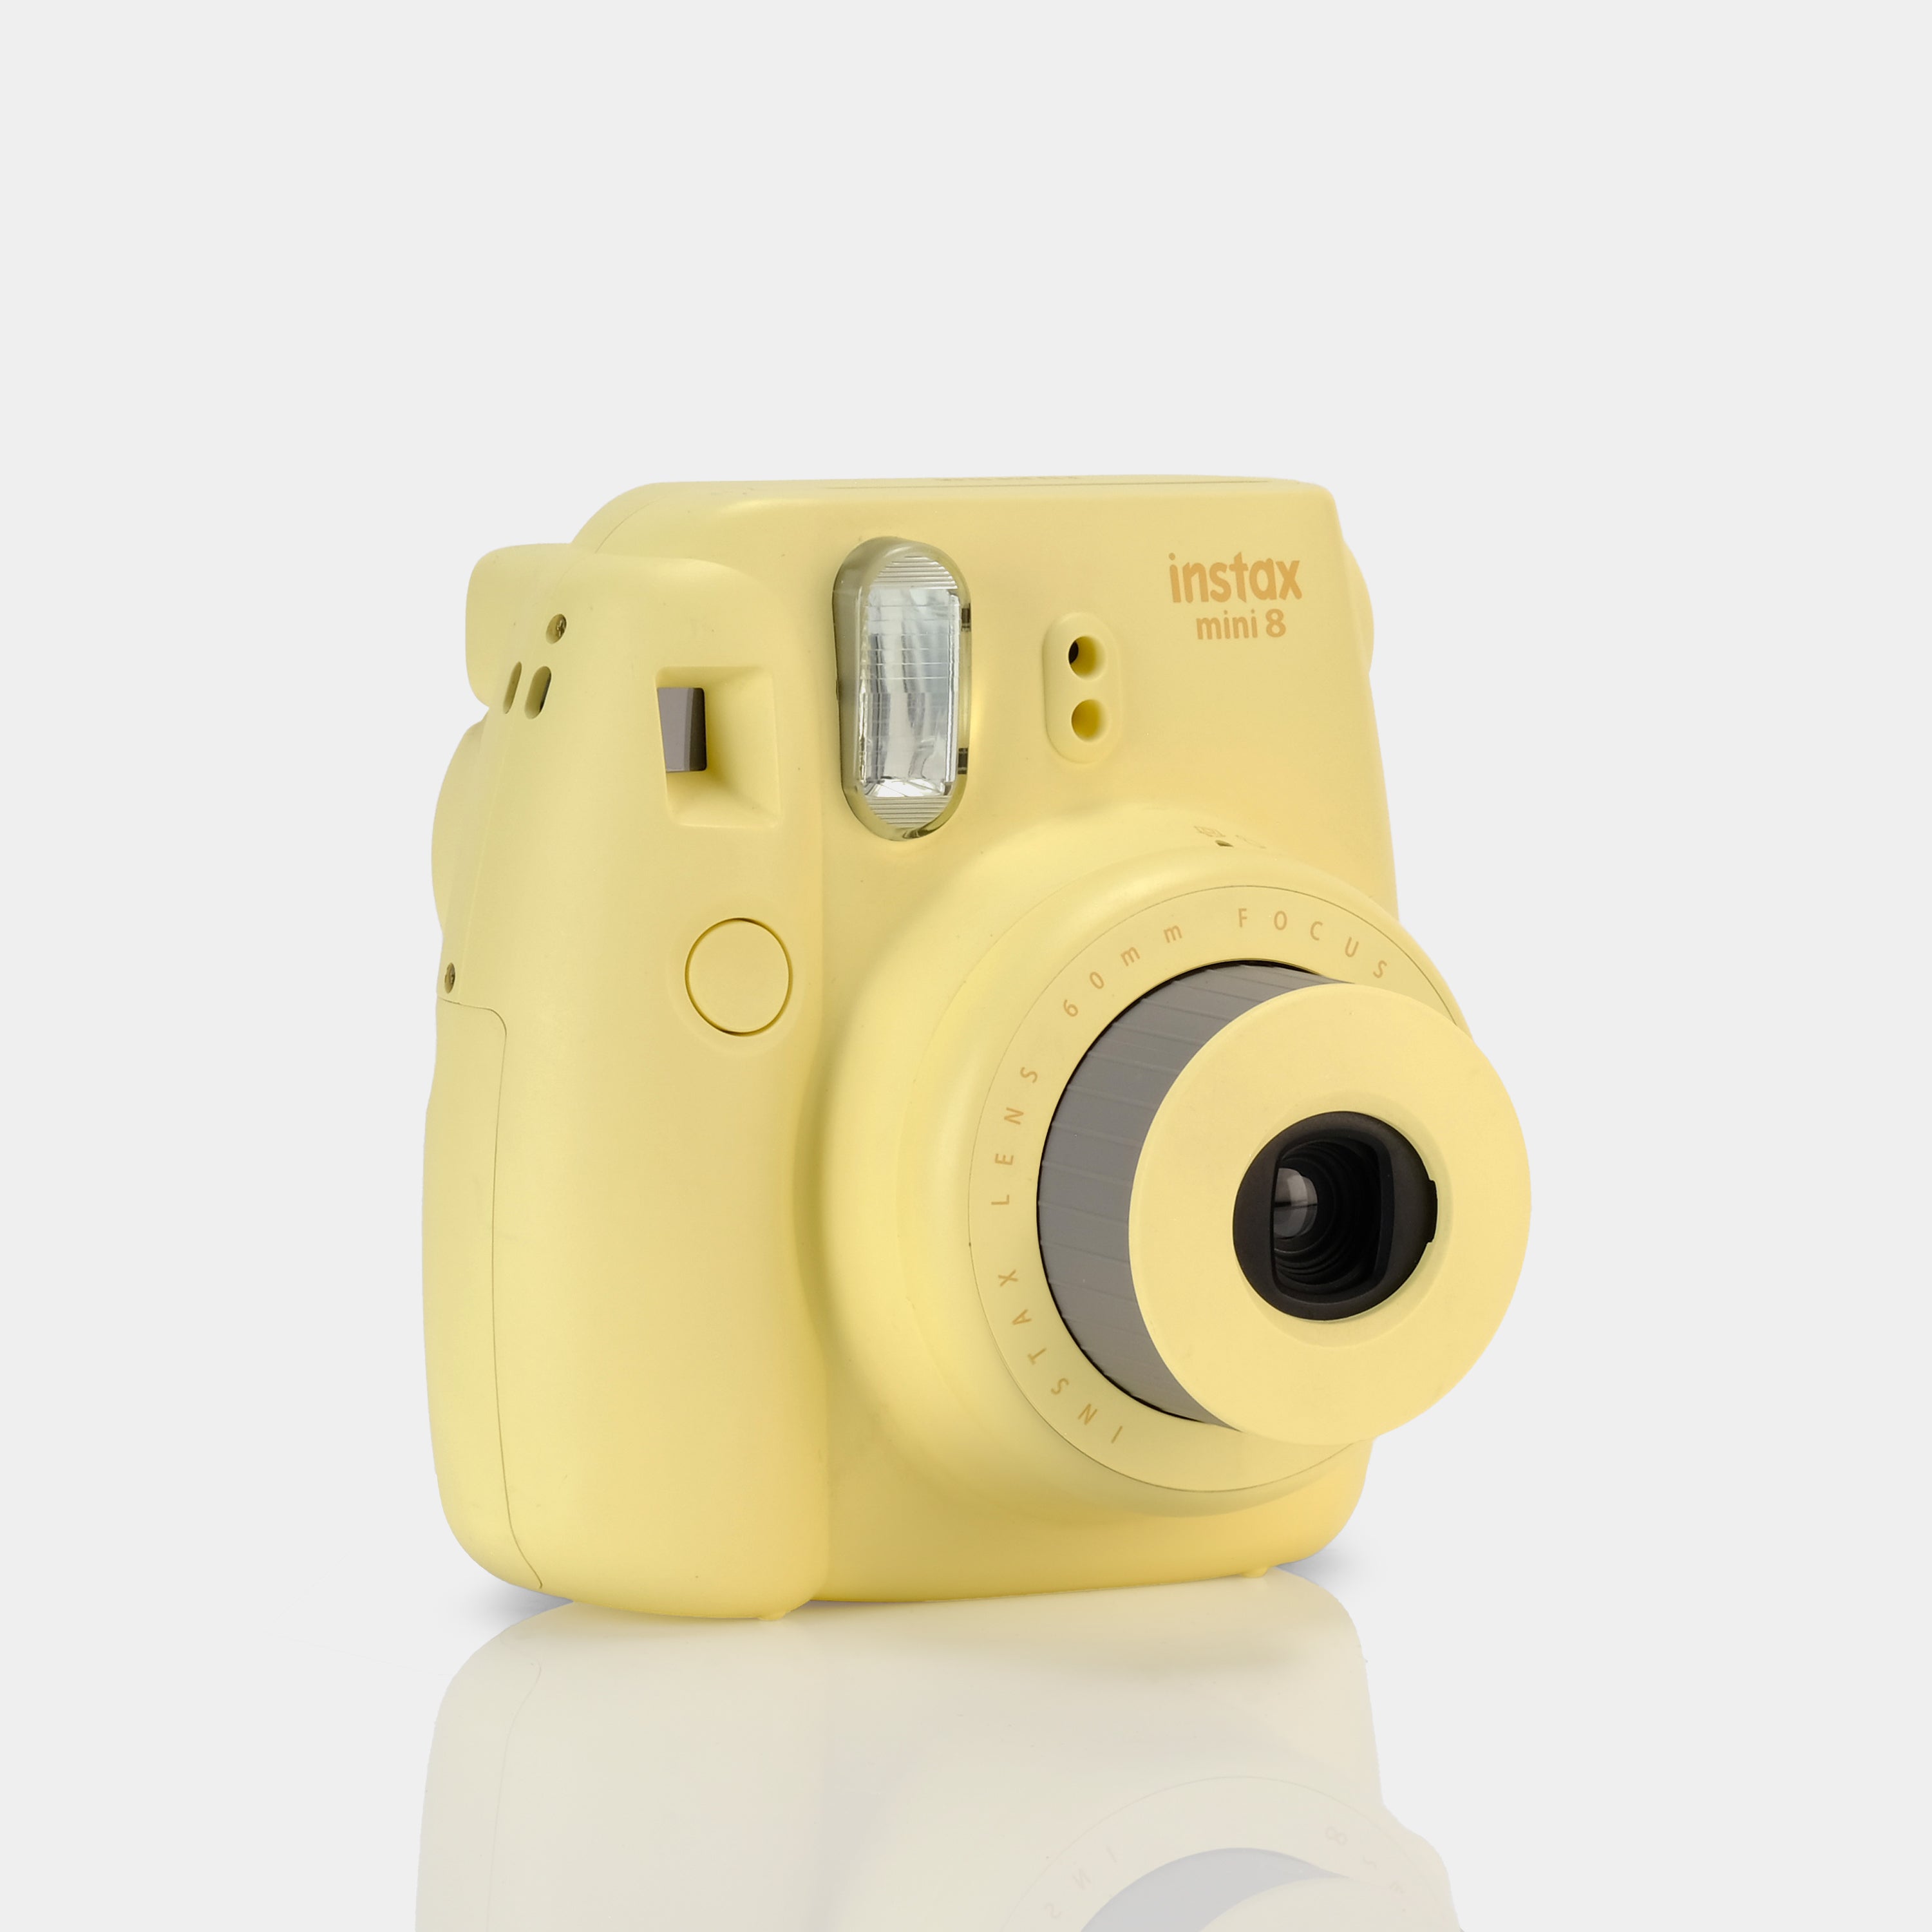 Fujifilm Instax Mini 8 Yellow with Yellow Case - Refurbished